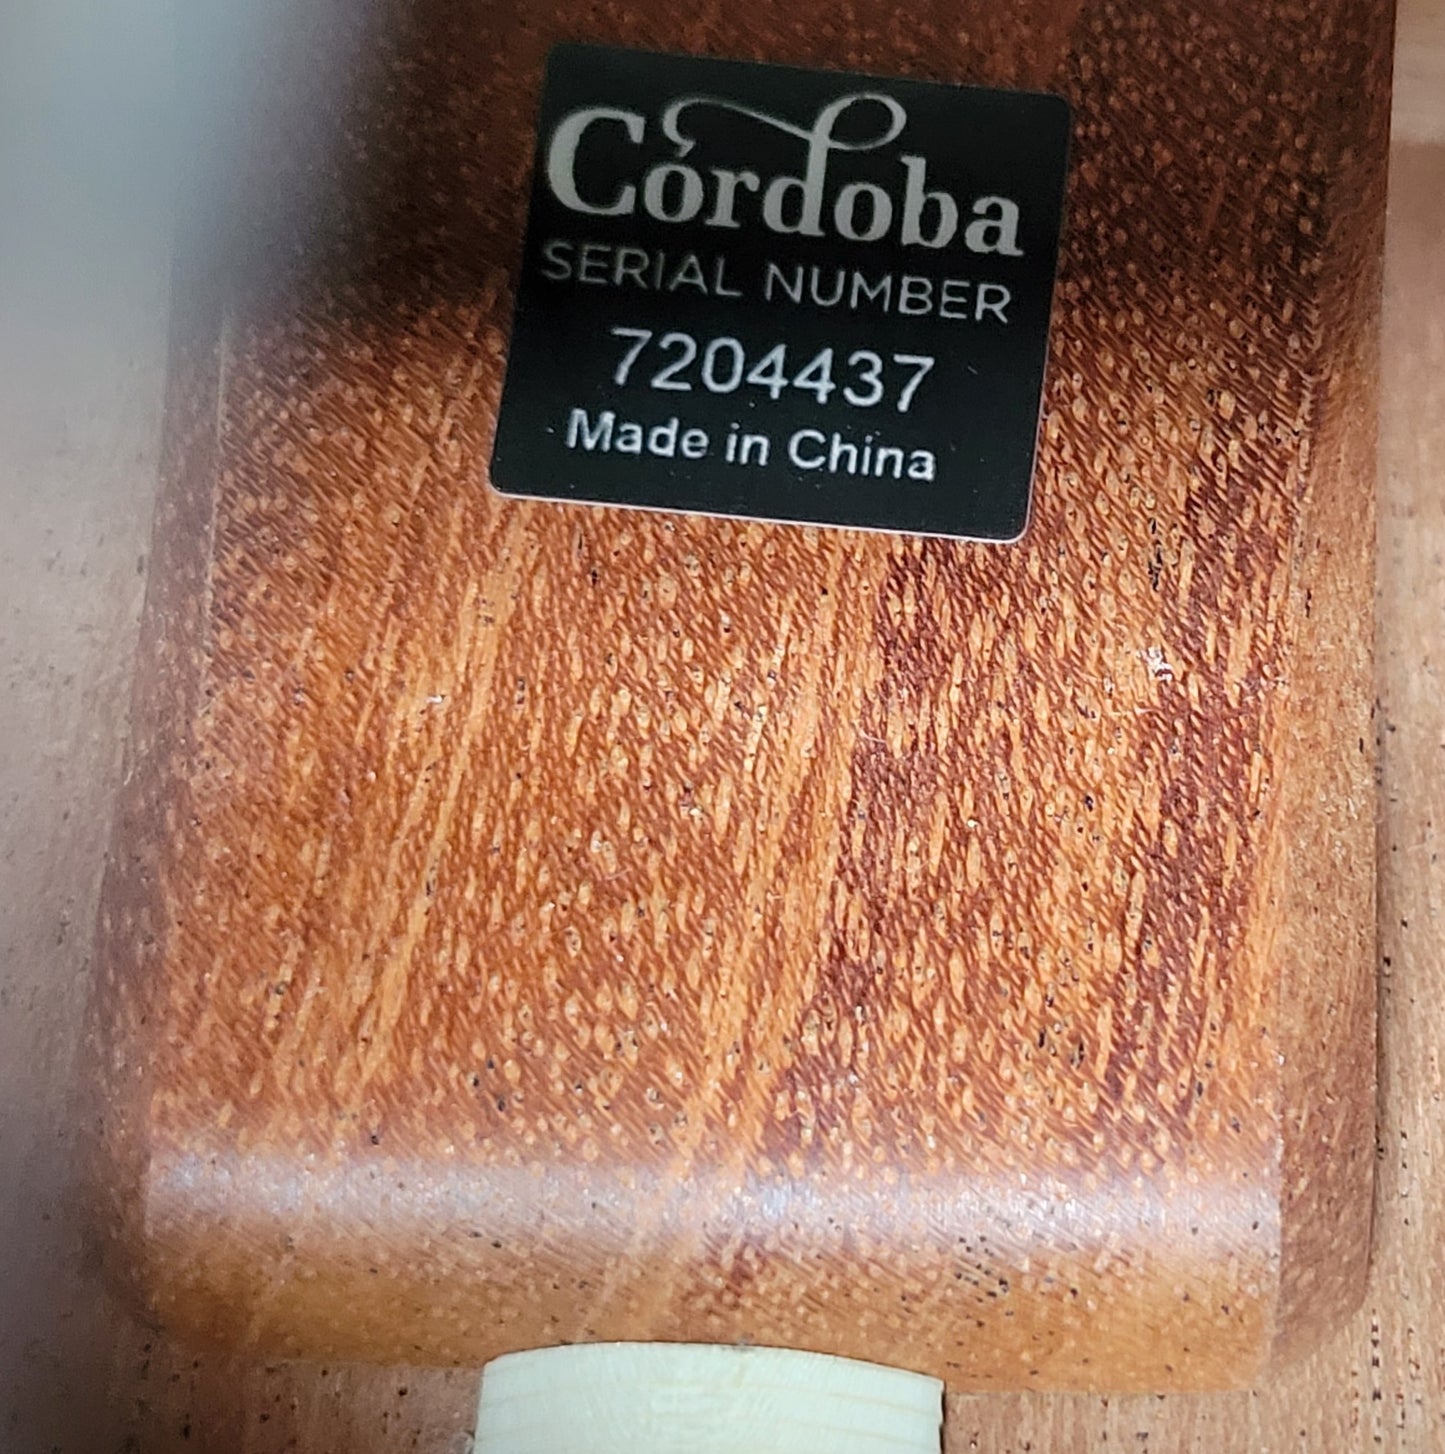 Cordoba C9 Parlor CD Acoustic Classical Guitar, New Rigid Case